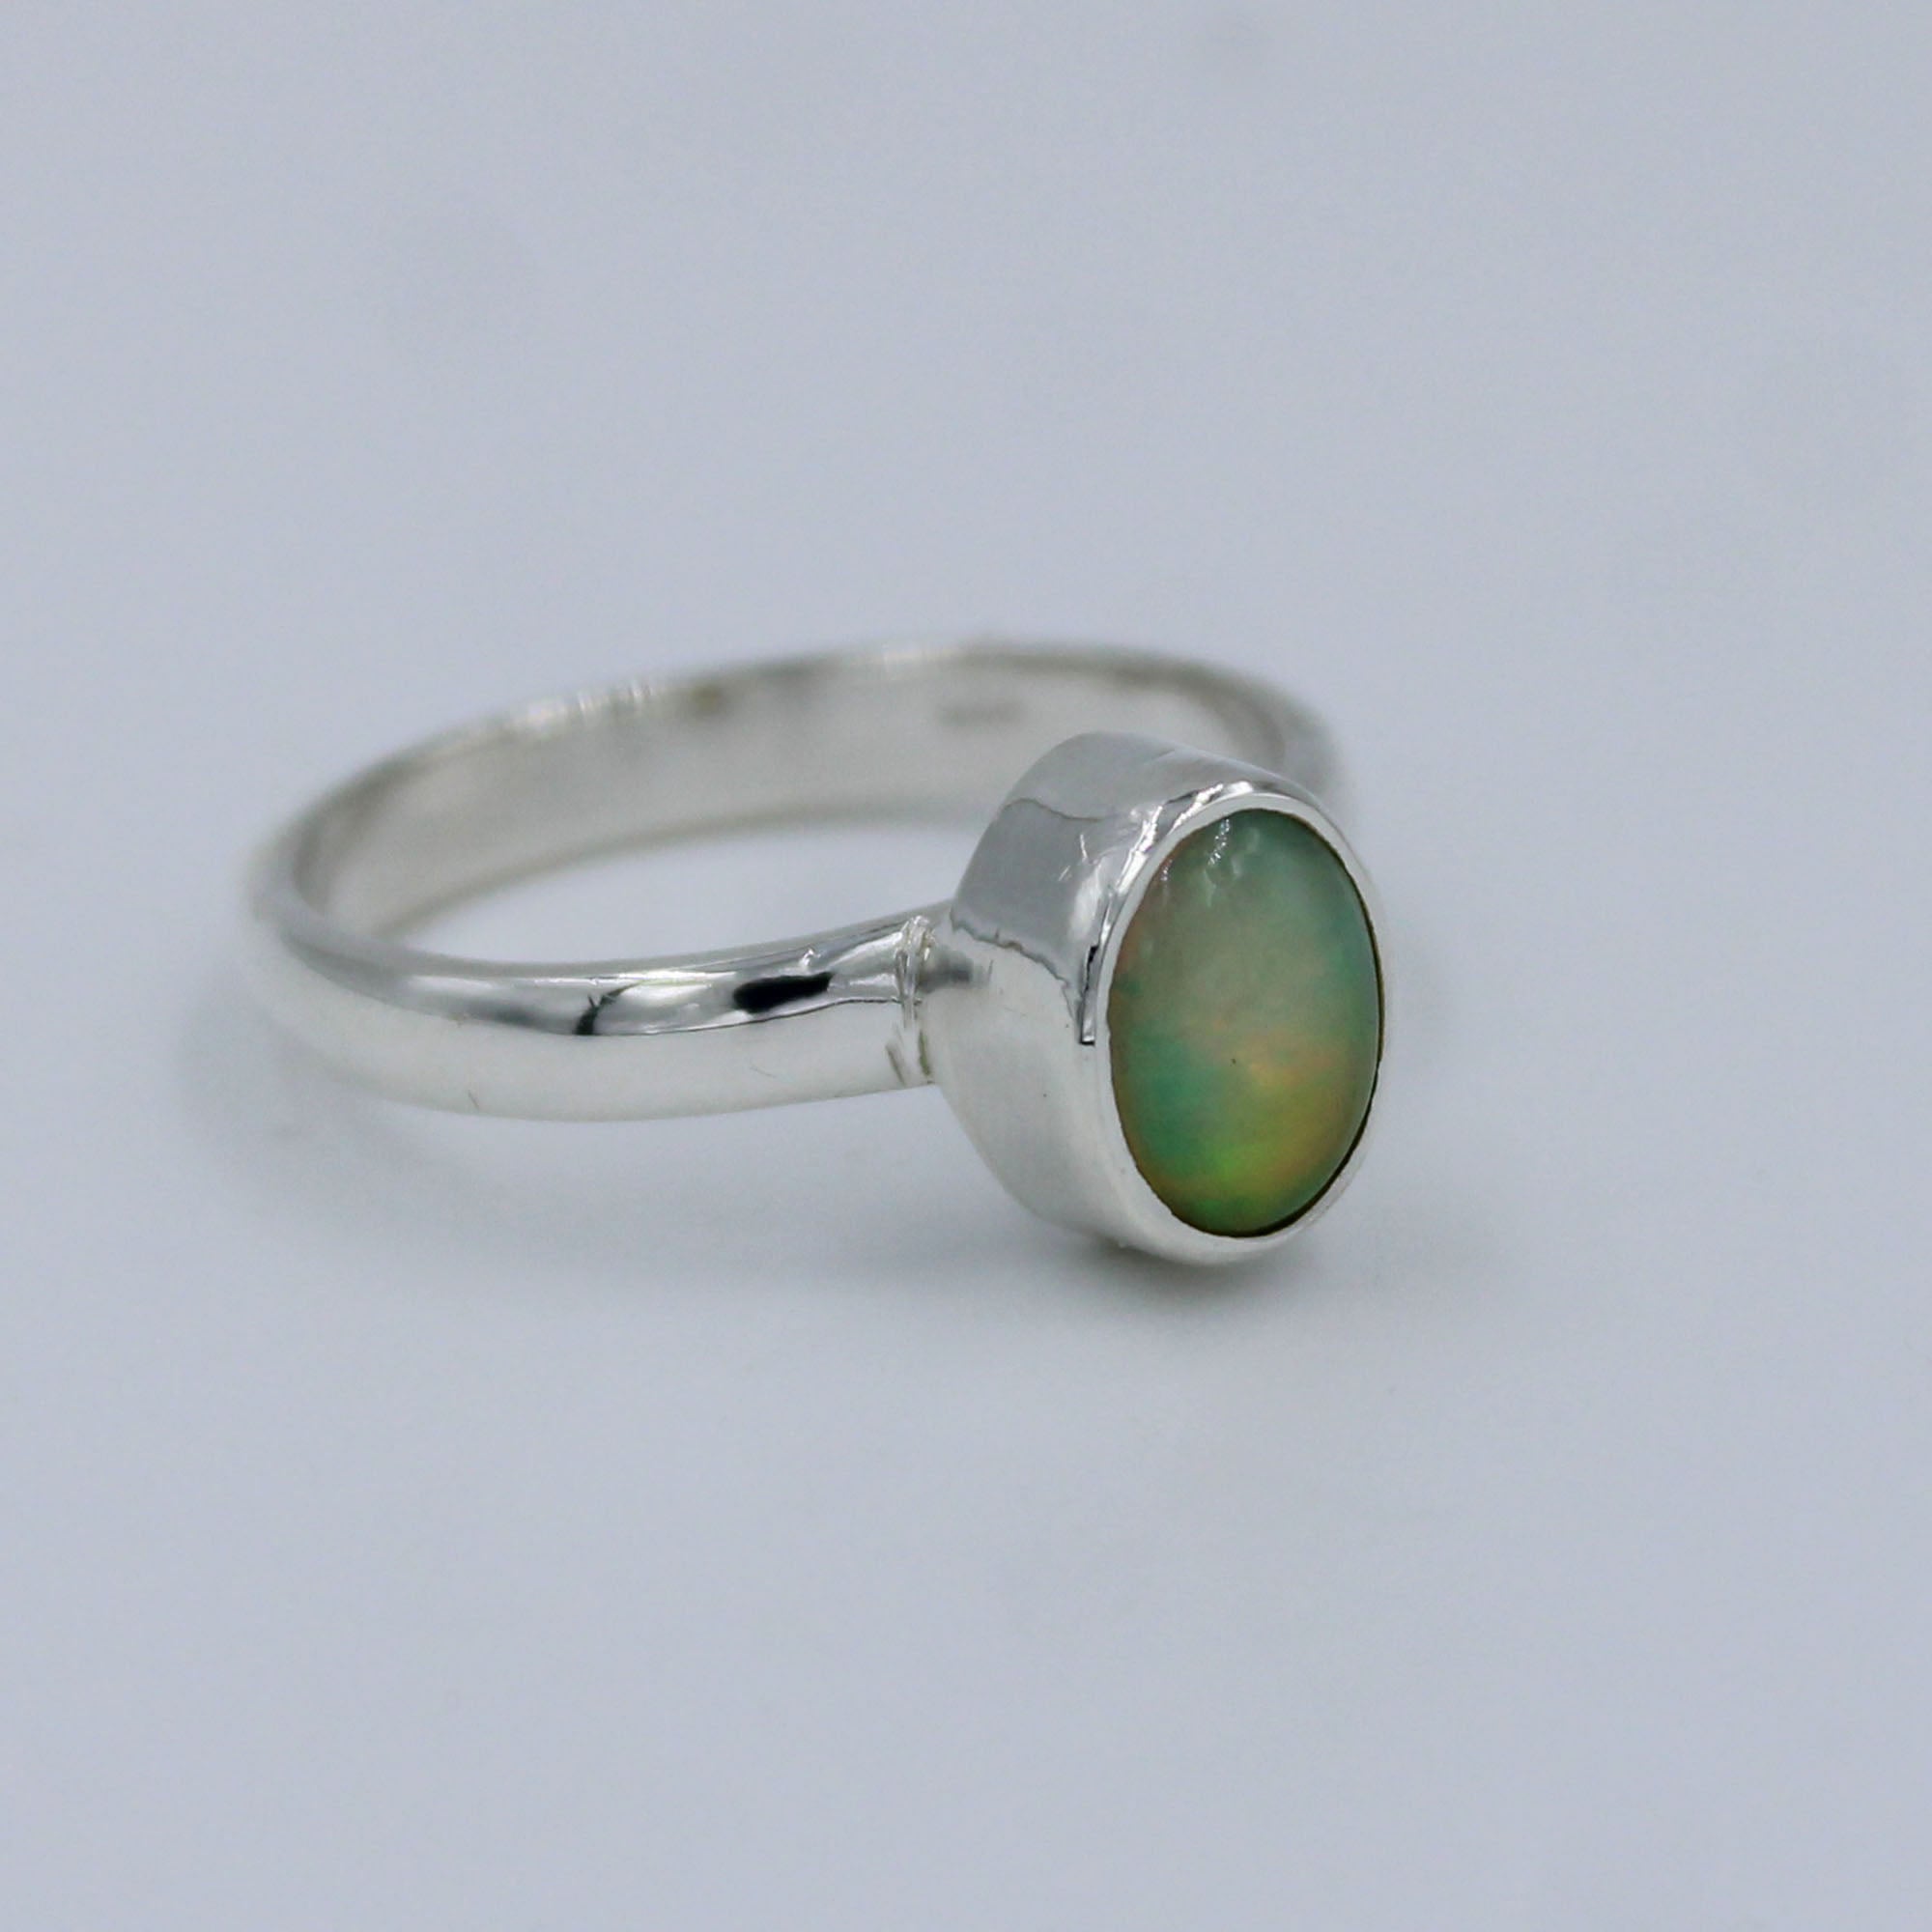 Australian Opal Gemstone 925 Sterling Silver Handmade Silver Jewelry Ring Size 8